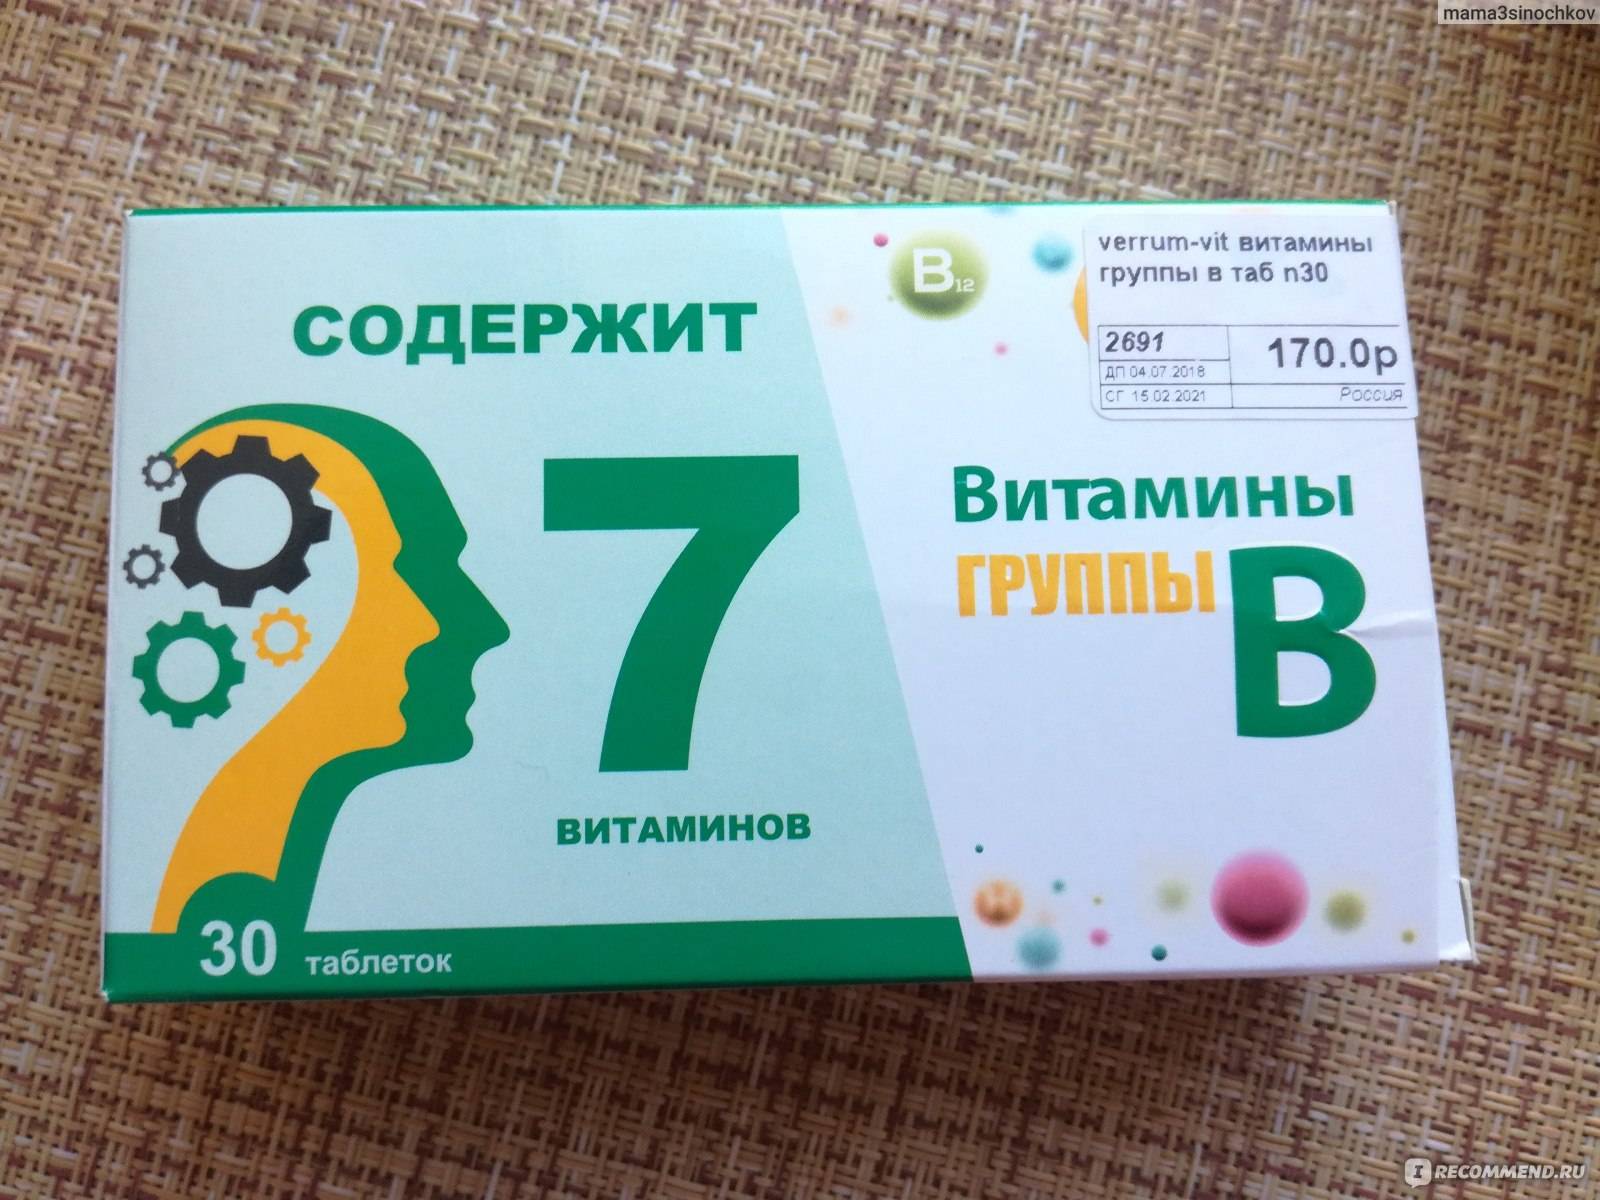 Б 1 б 2 б 6. Витамины в1 в6 в12 в таблетках. Комплекс витаминов в2 в6 в12. Витамин в12 витамир таб 60. Витамины группы б12 в таблетках 'б1.